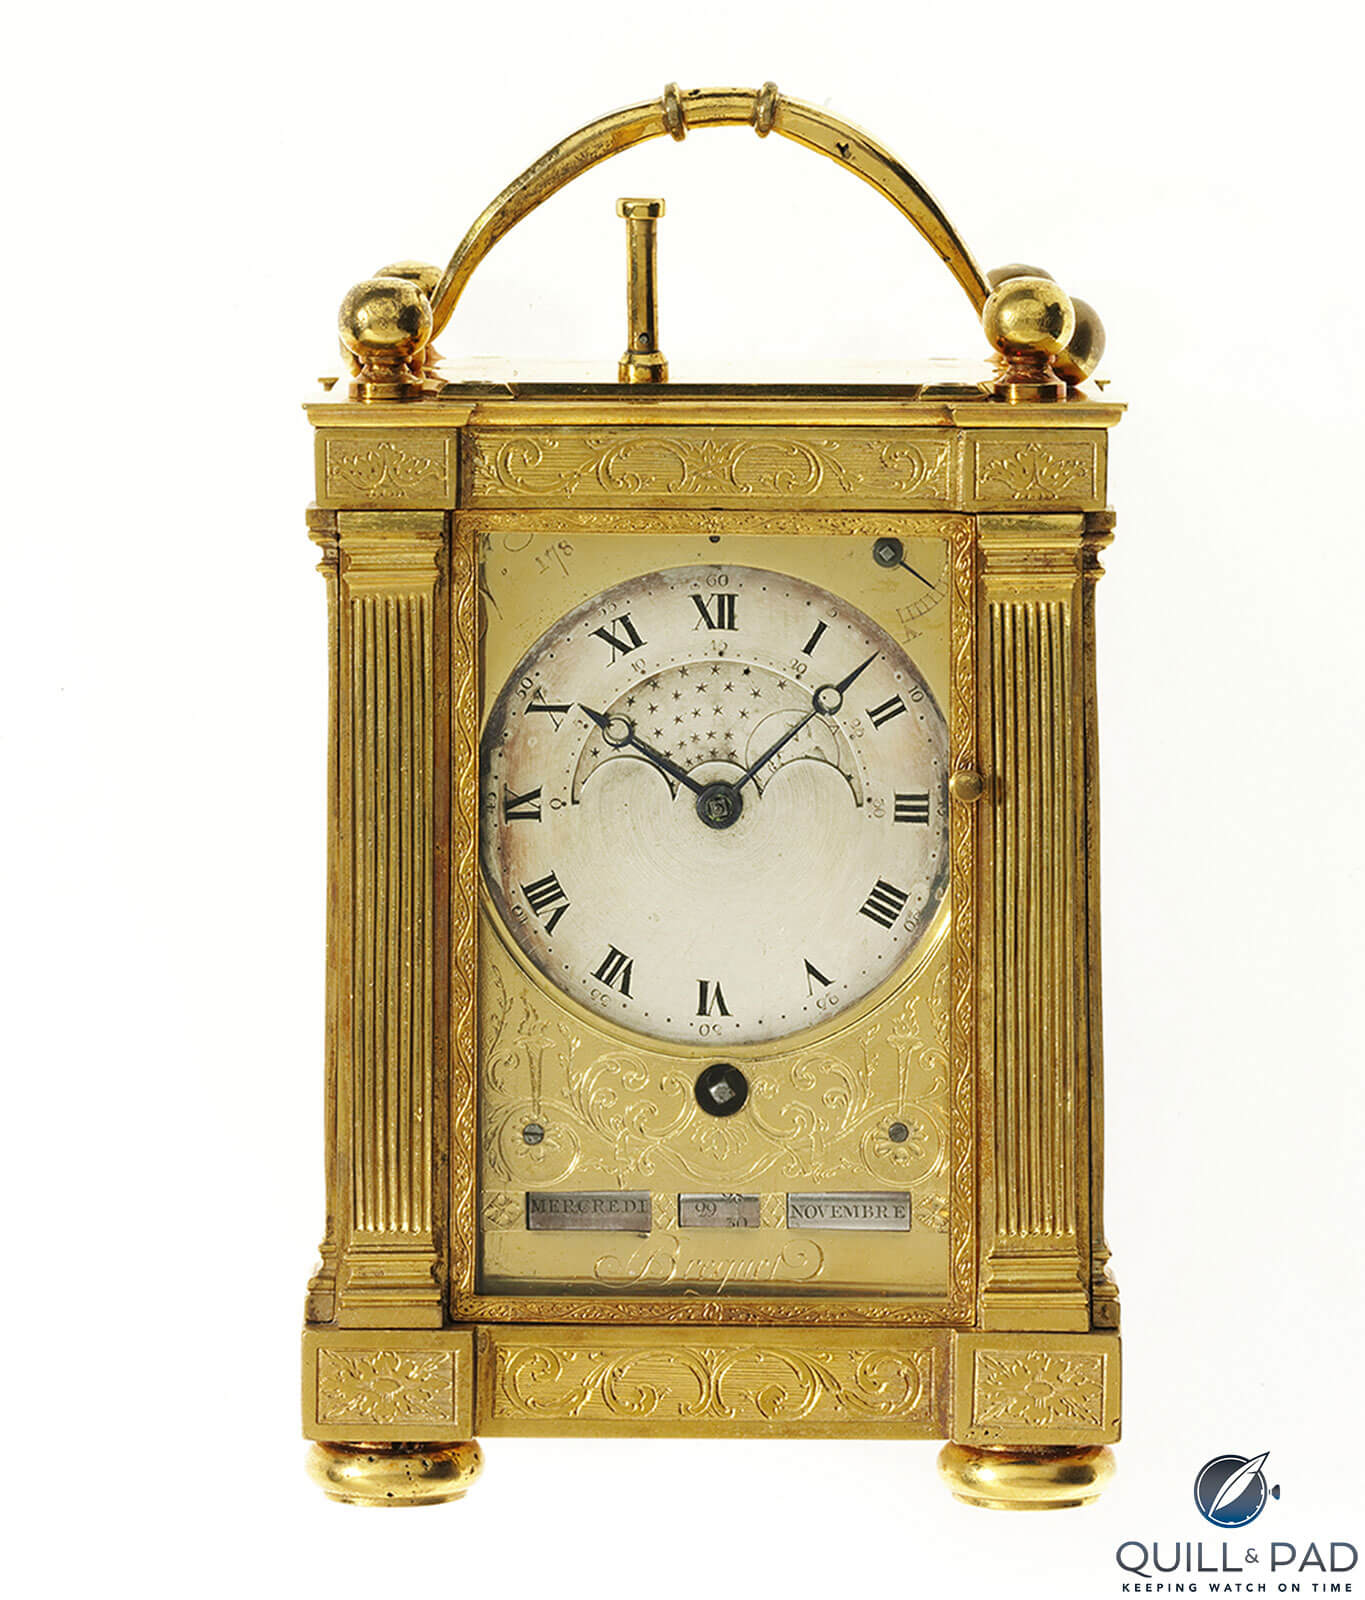 Breguet No. 178 travel clock for Napoleon Bonapart